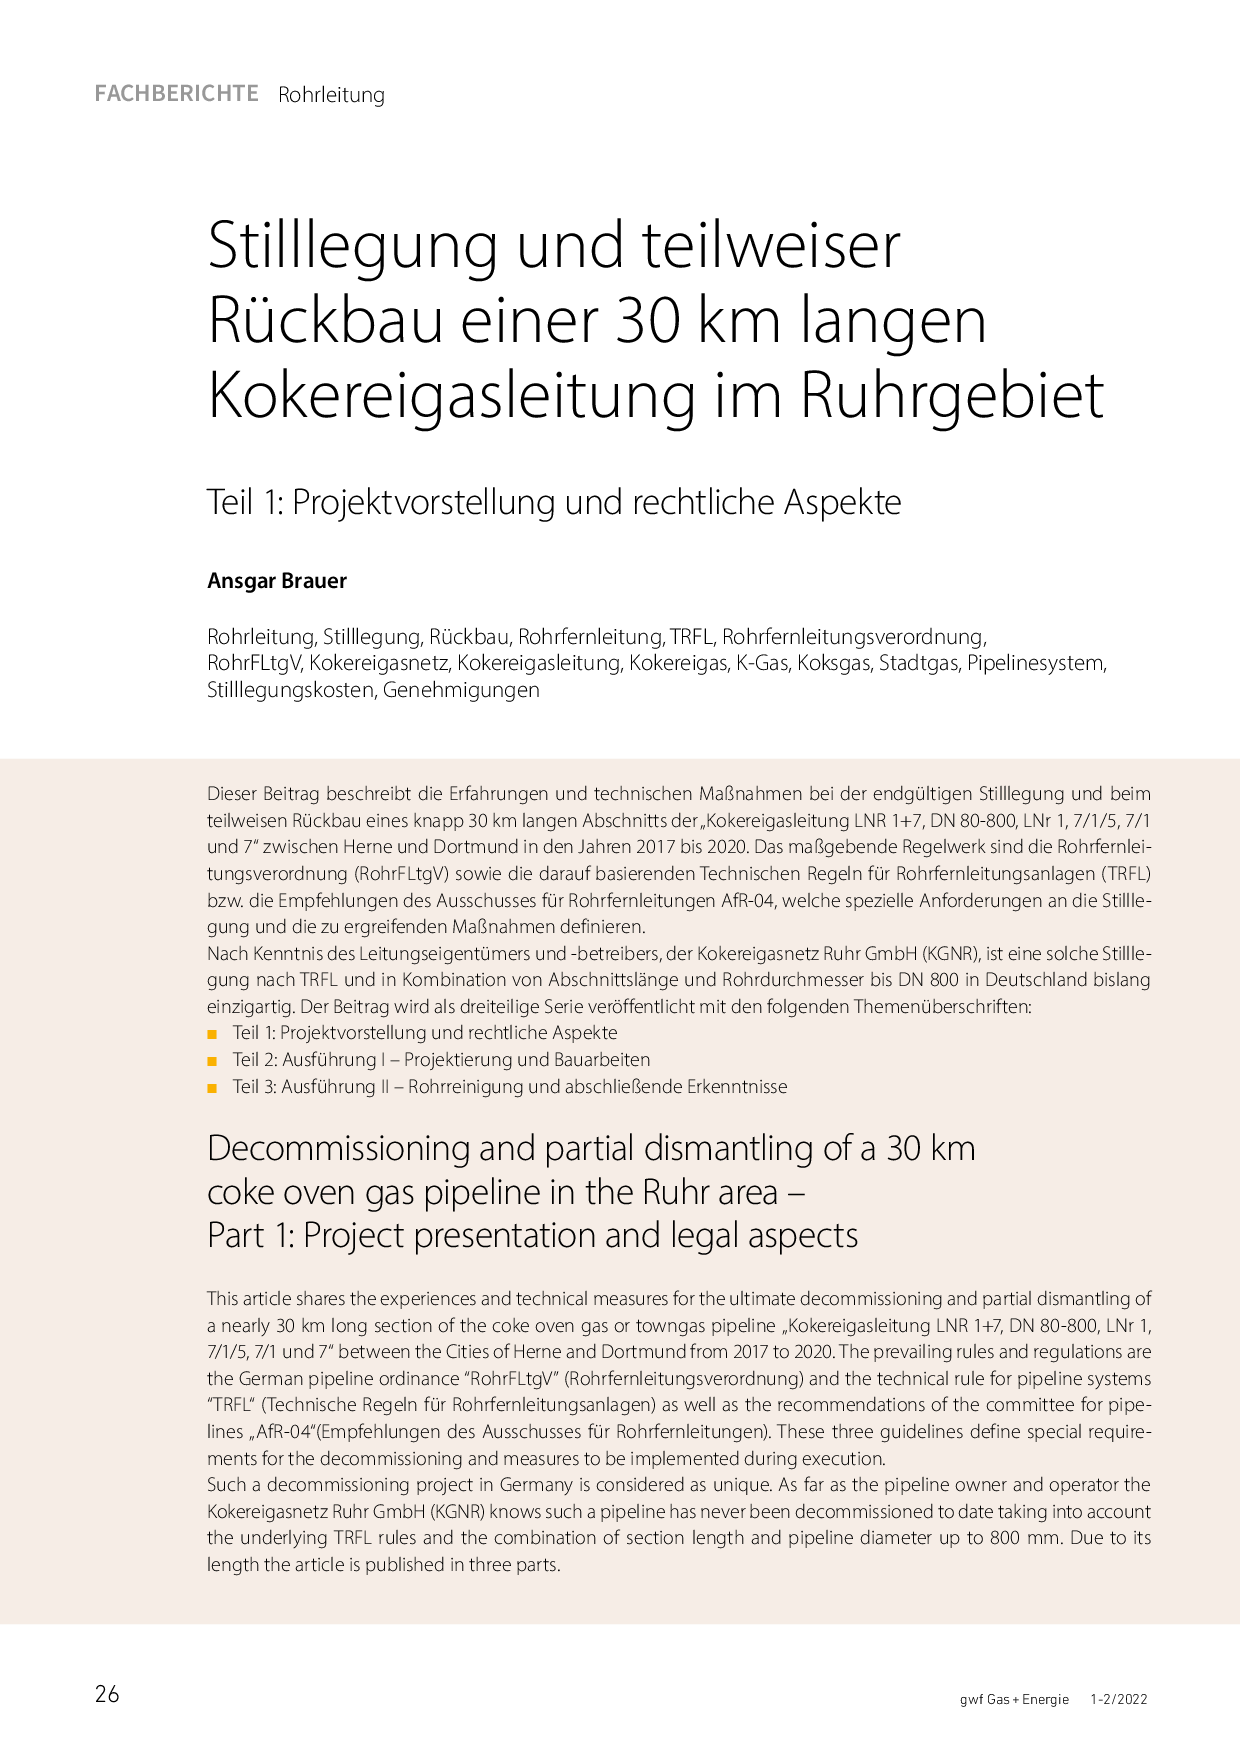 Stilllegung und teilweiser Rückbau einer 30 km langen Kokereigasleitung im Ruhrgebiet